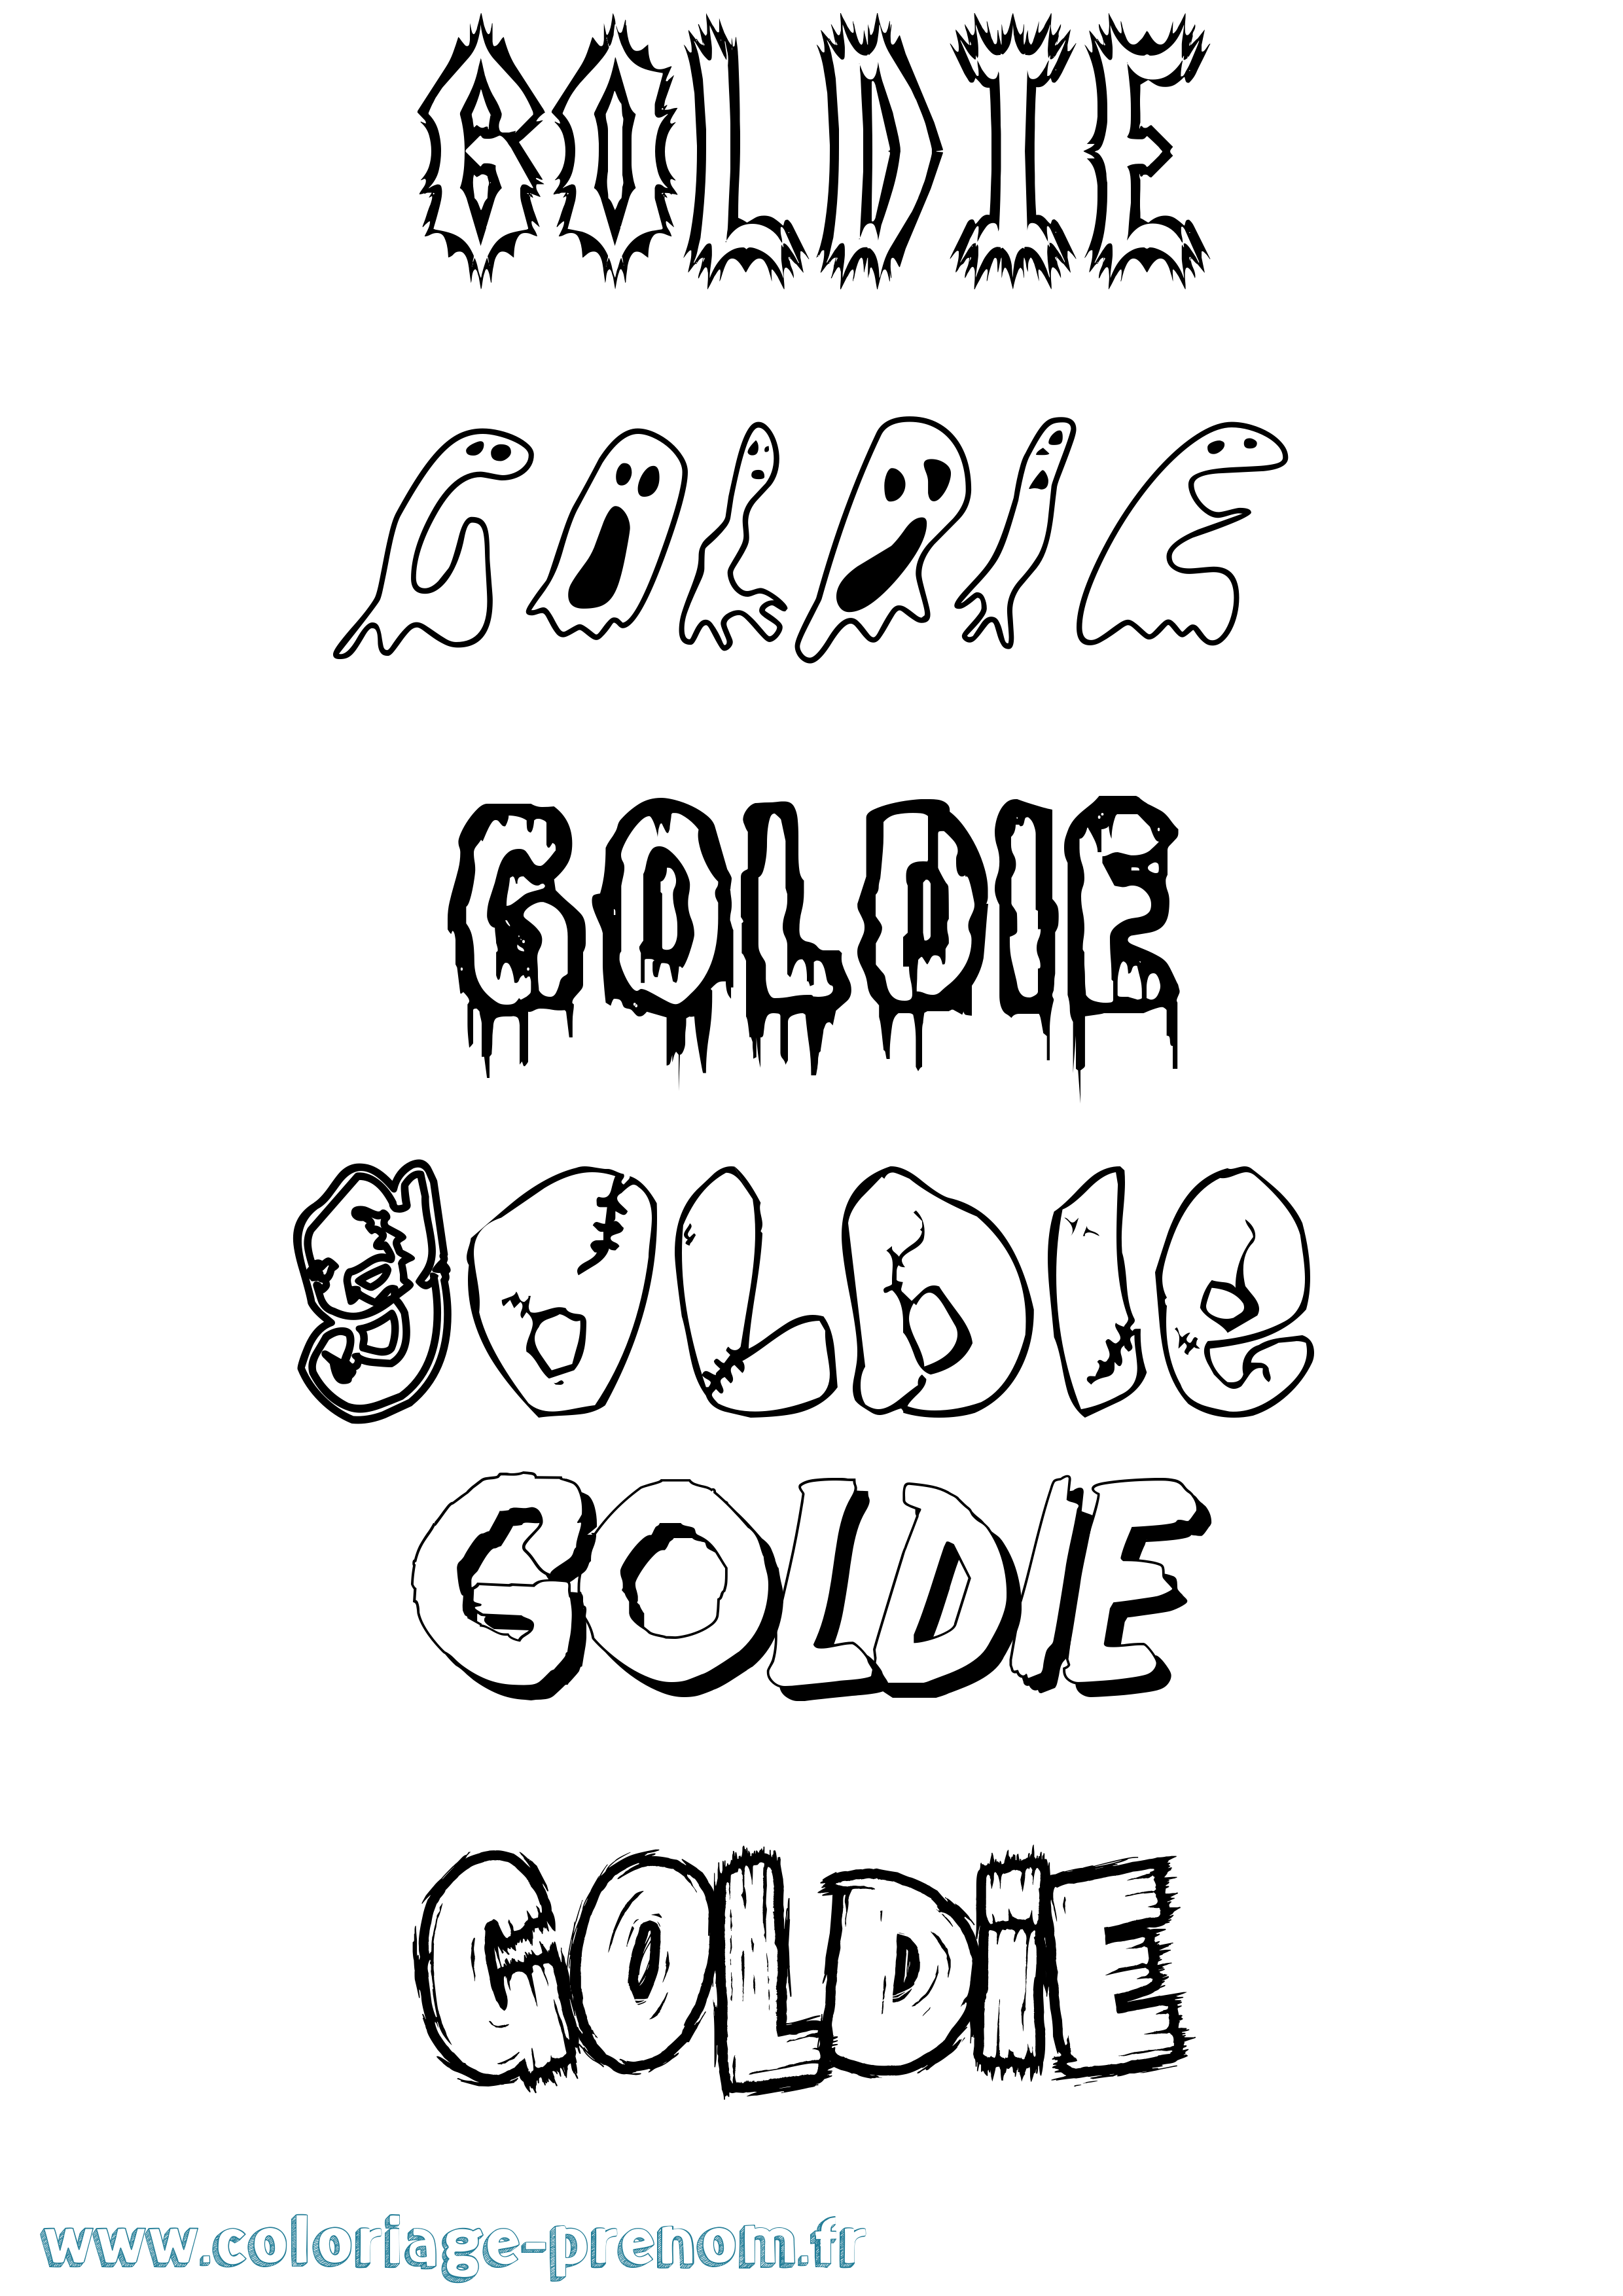 Coloriage prénom Goldie Frisson